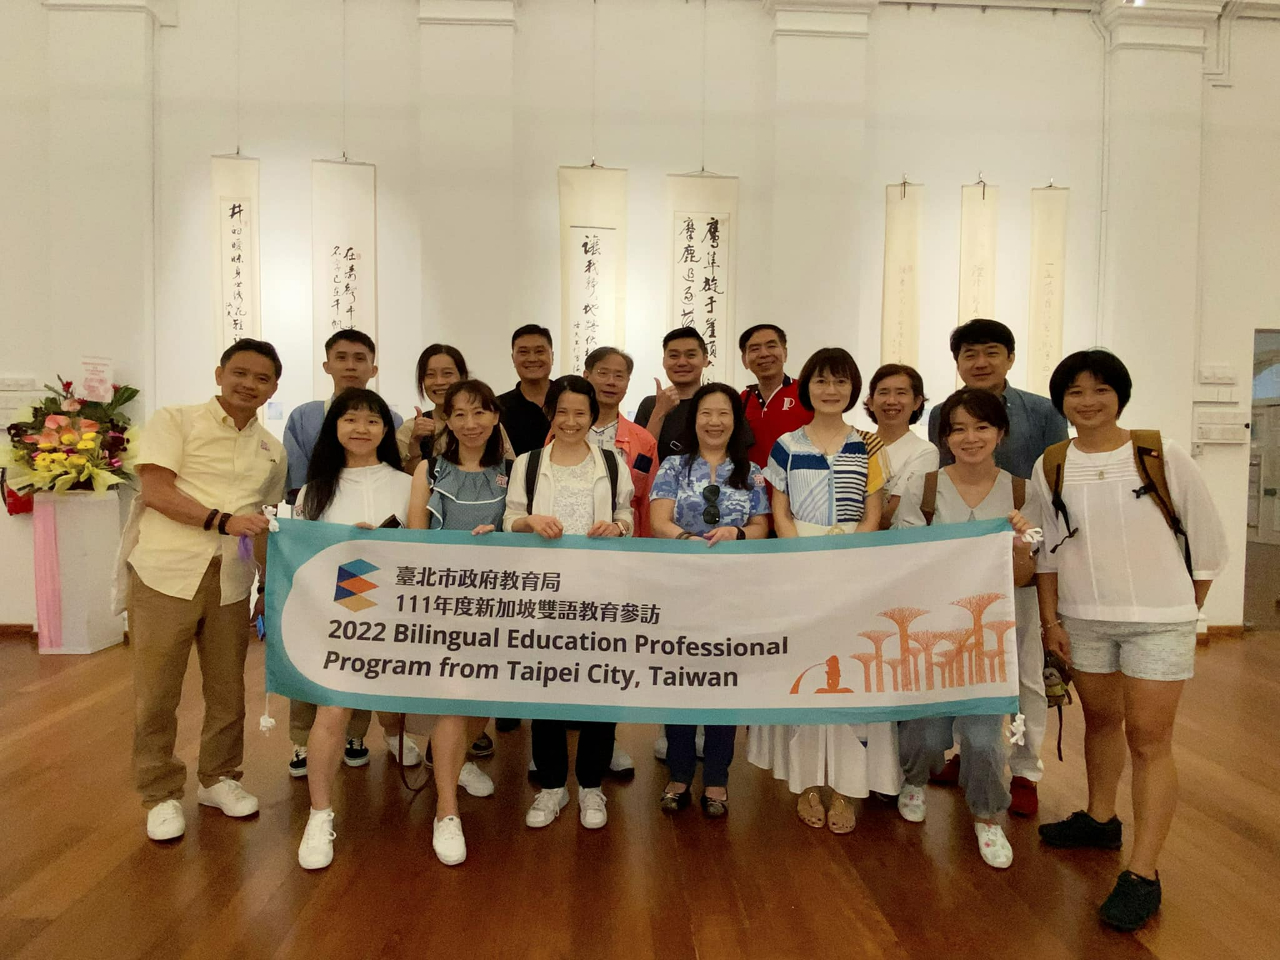 台北市教育局雙語教育參訪團蒞臨參觀「詩魔洛夫詩書影像展」(111/08/14)